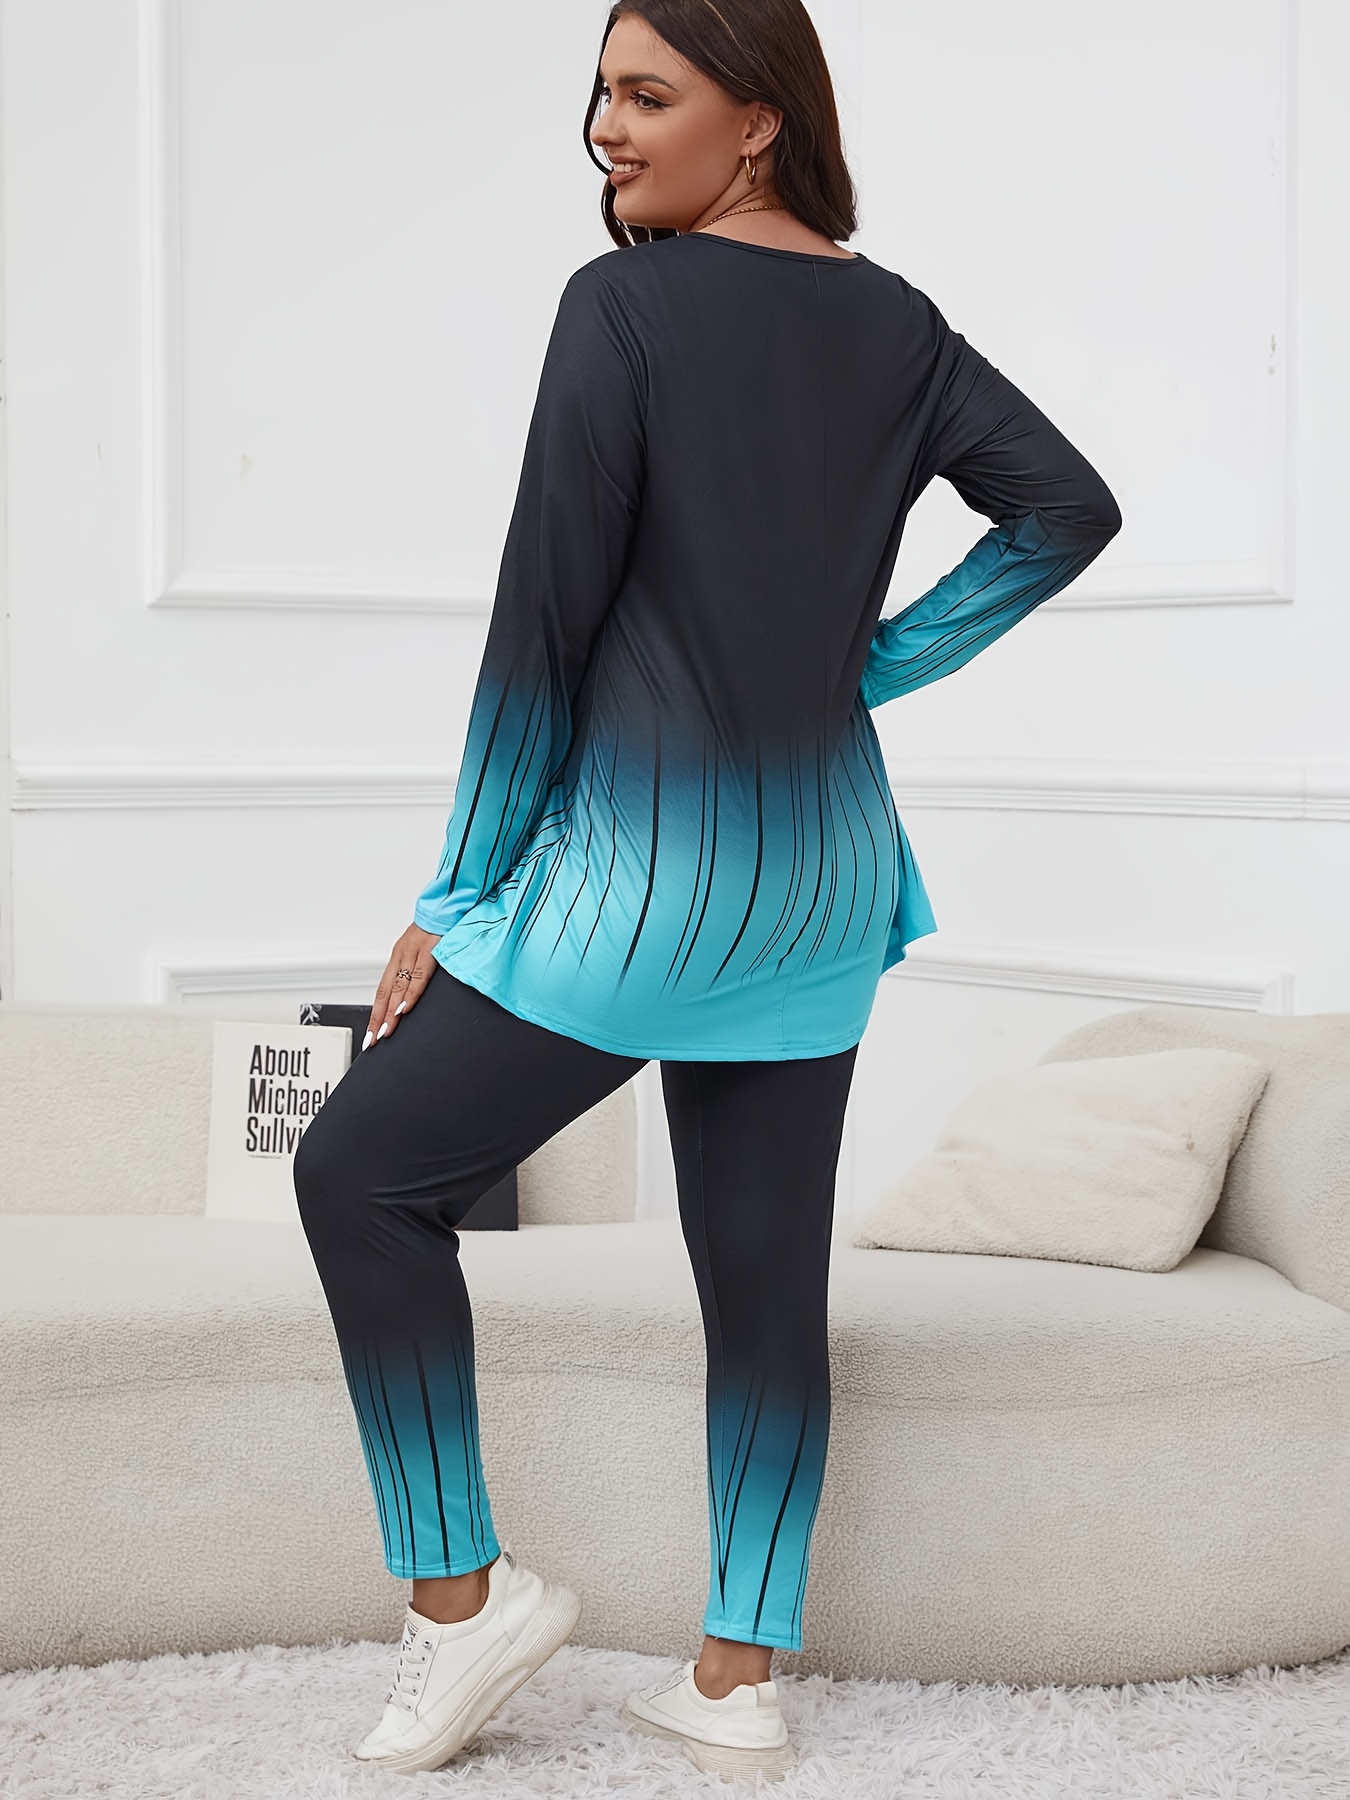 Plus Size Striped Tights Black Leggungs Women Thermal Underwear